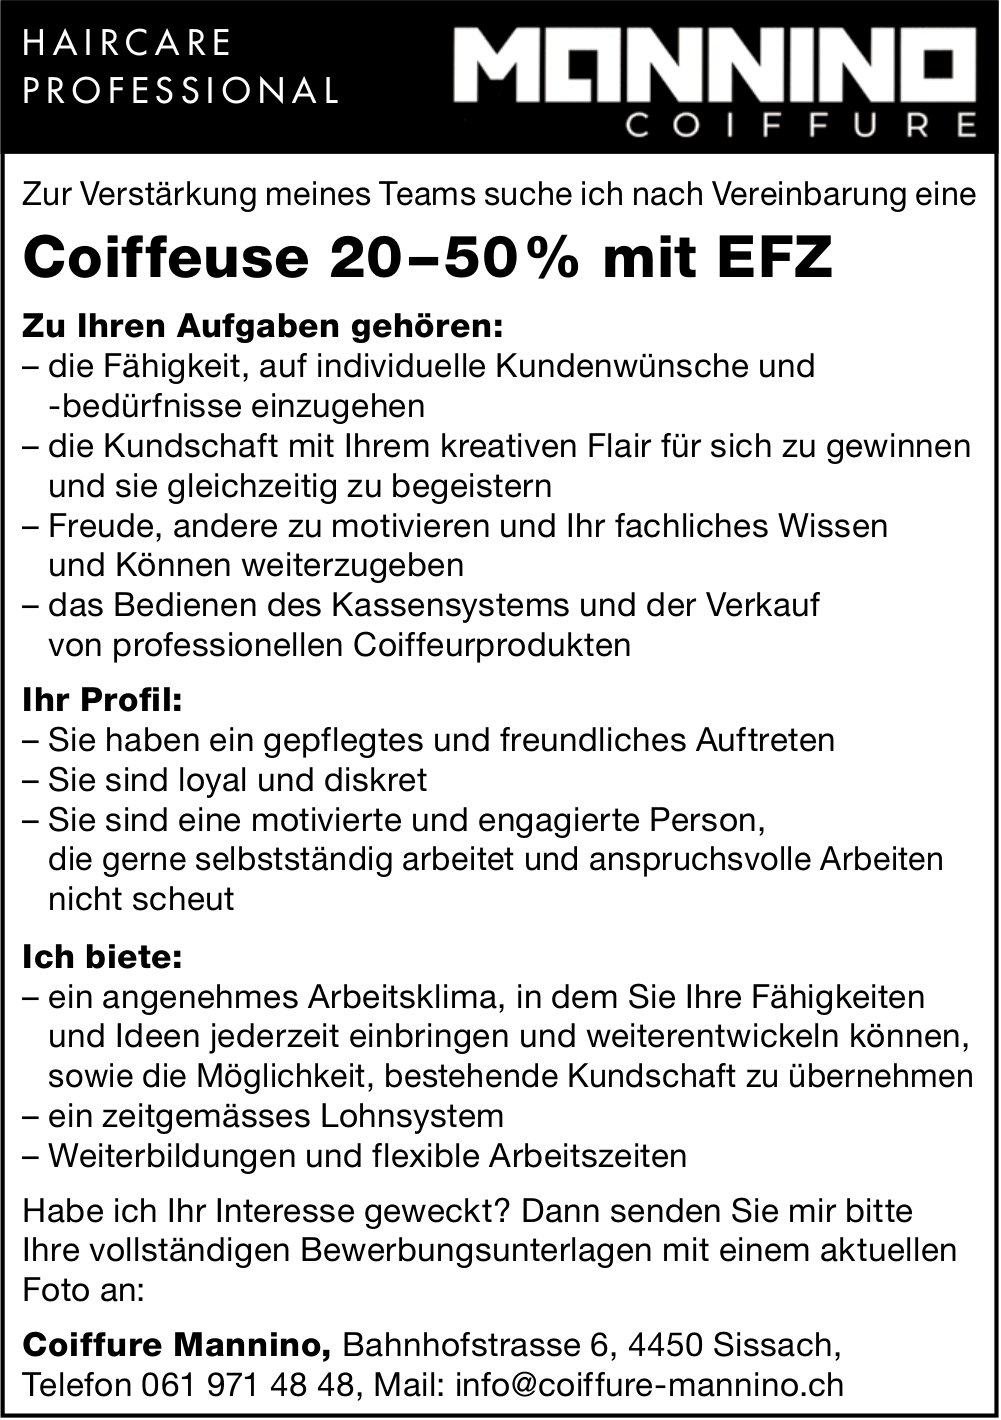 Coiffeuse 20–50% mit EFZ, Coiffure Mannino, Sissach, gesucht